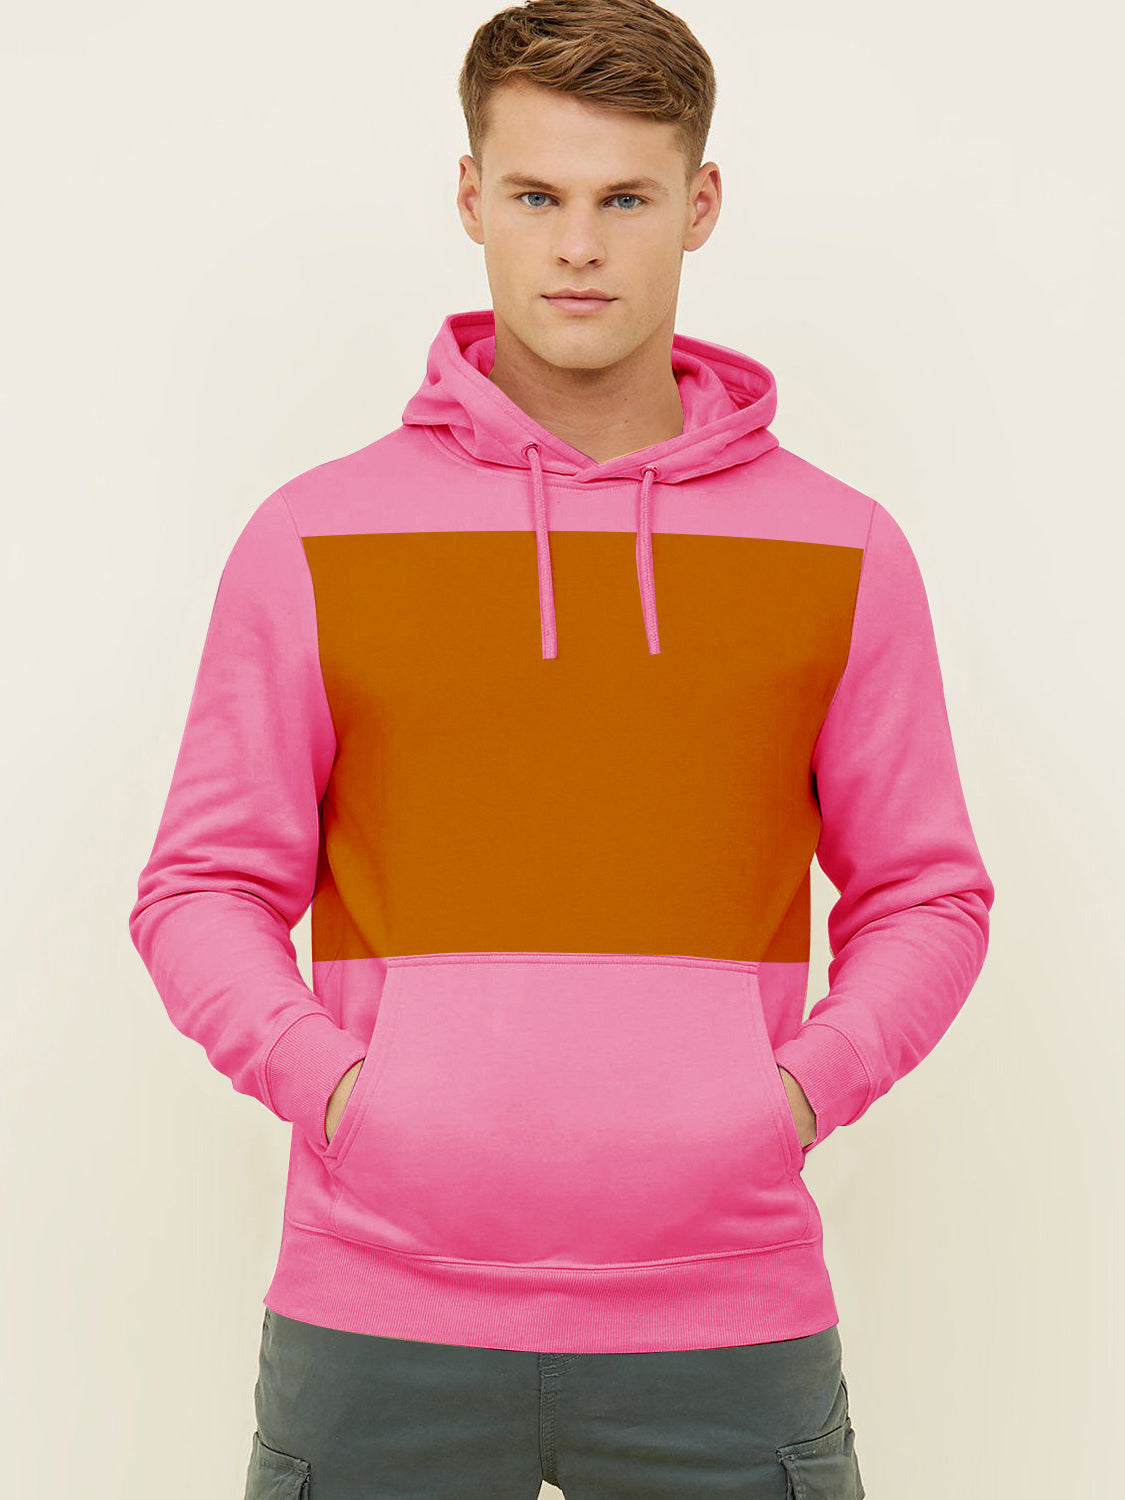 Next Fleece Pullover Hoodie For Men-Pink With Golden Panel-SP673